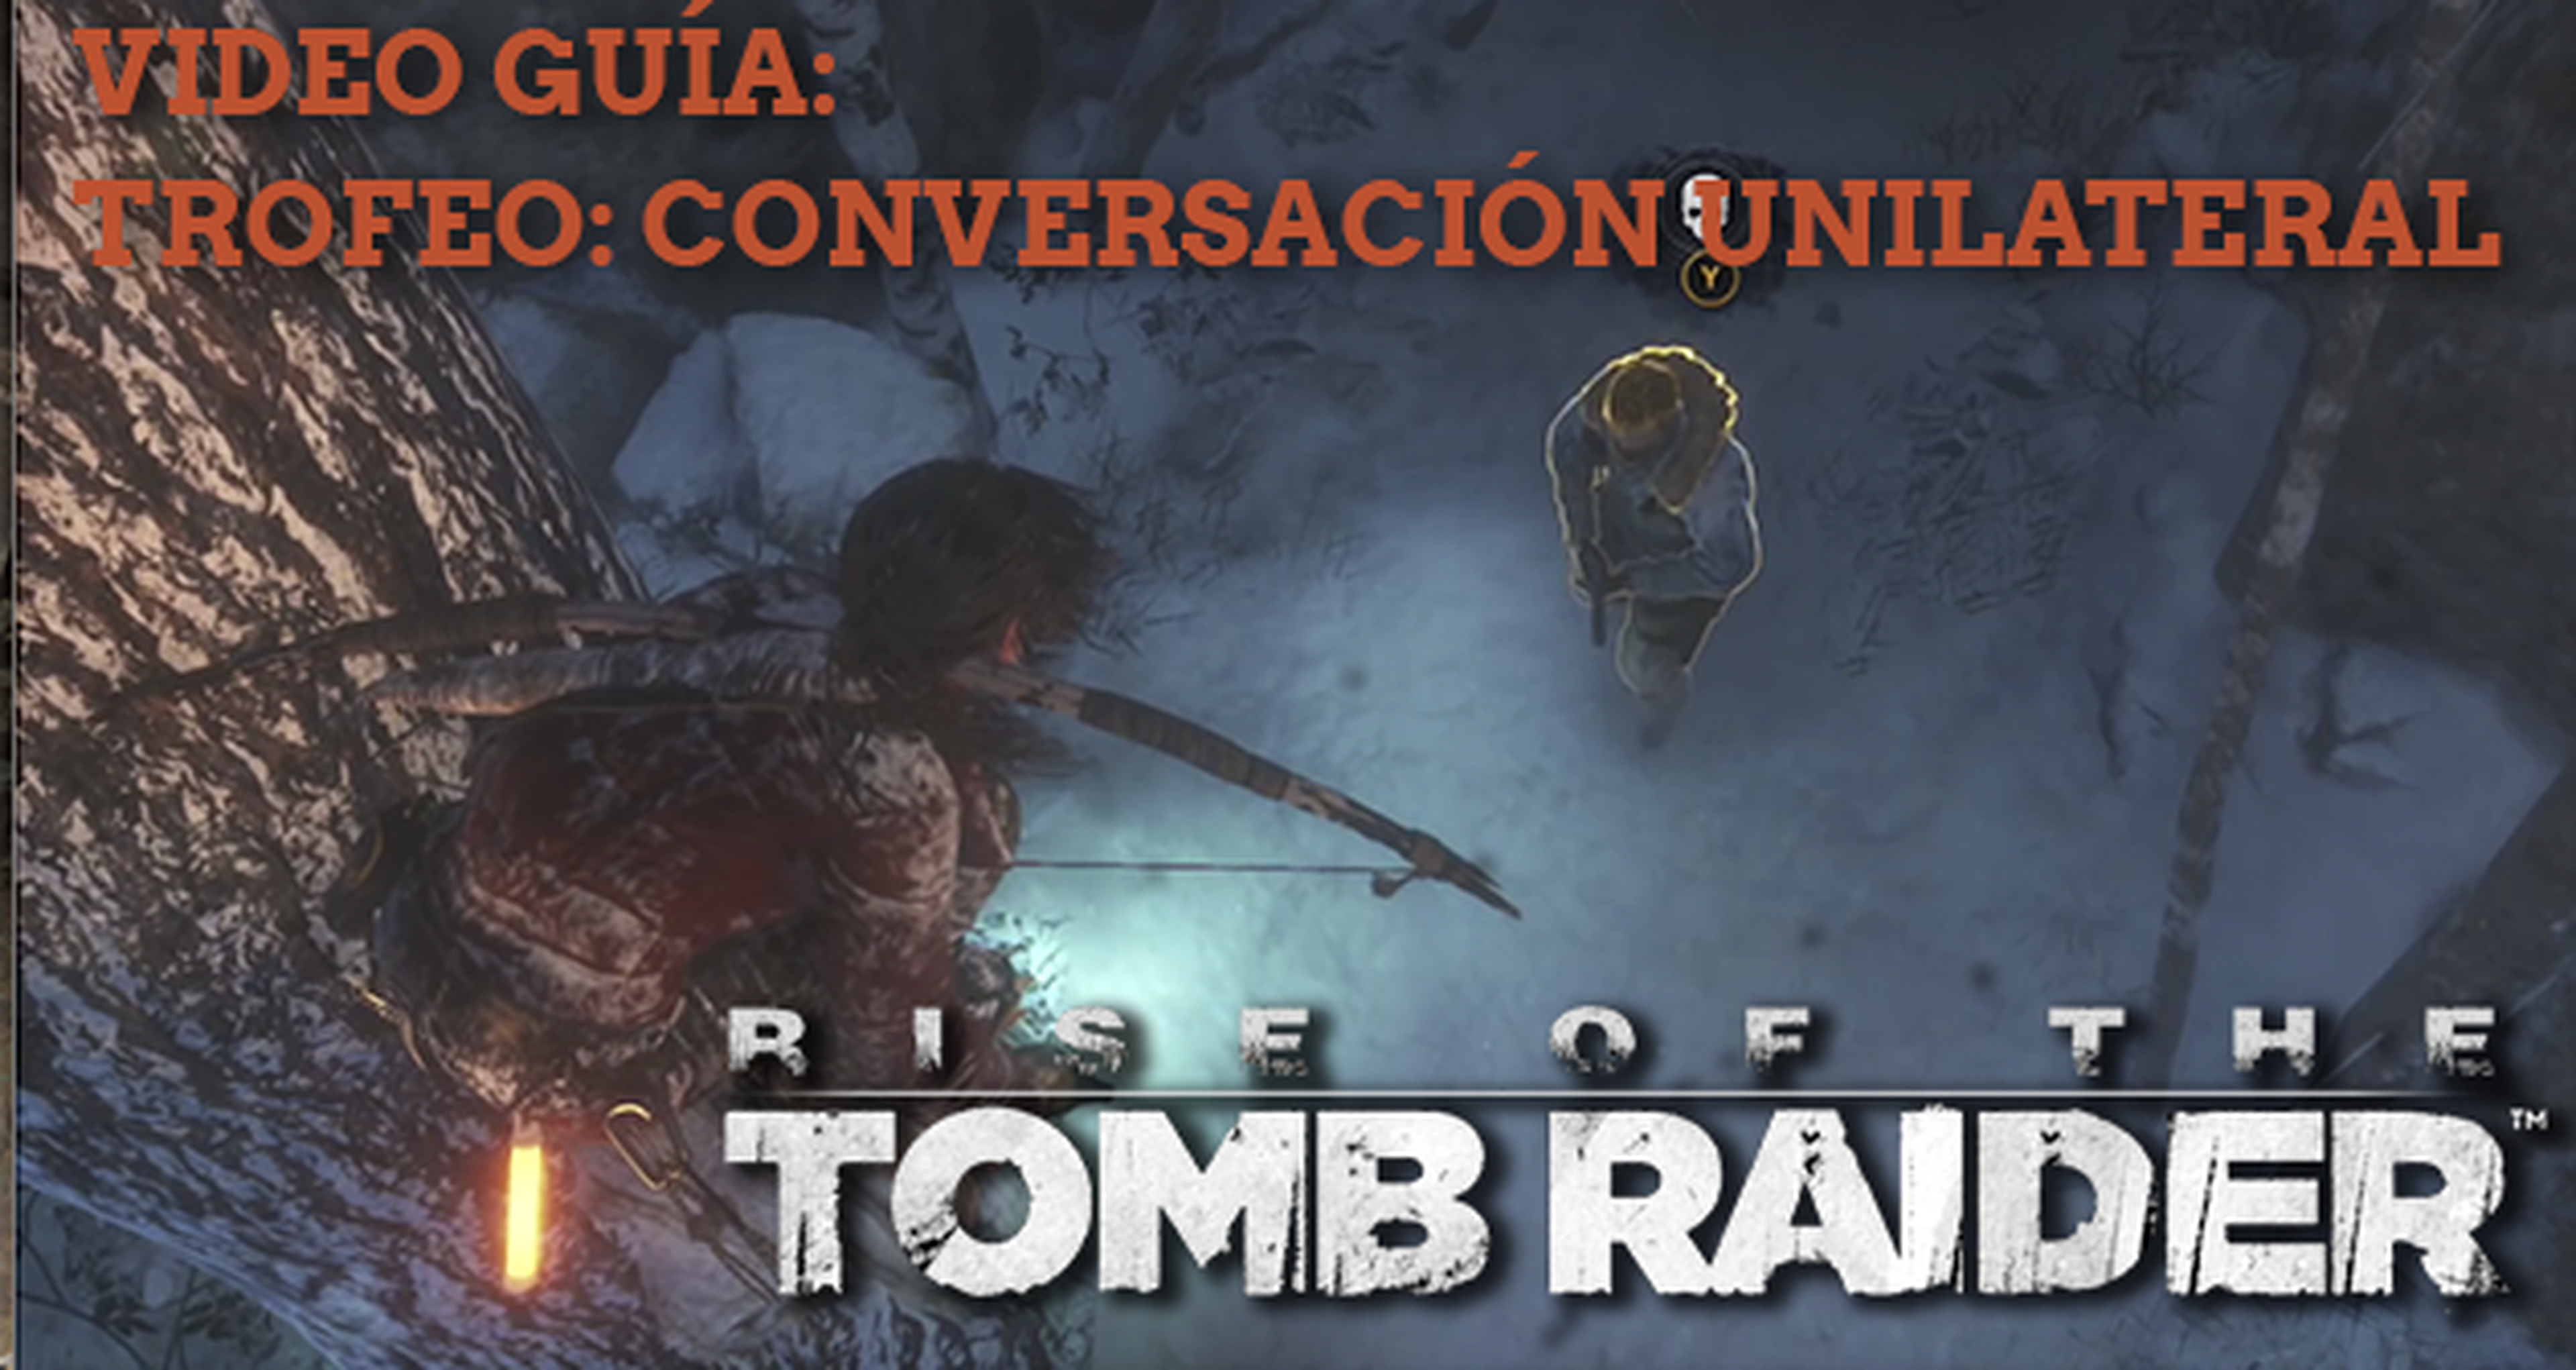 Guía de Rise of the Tomb Raider: cómo conseguir el trofeo Conversación unilateral